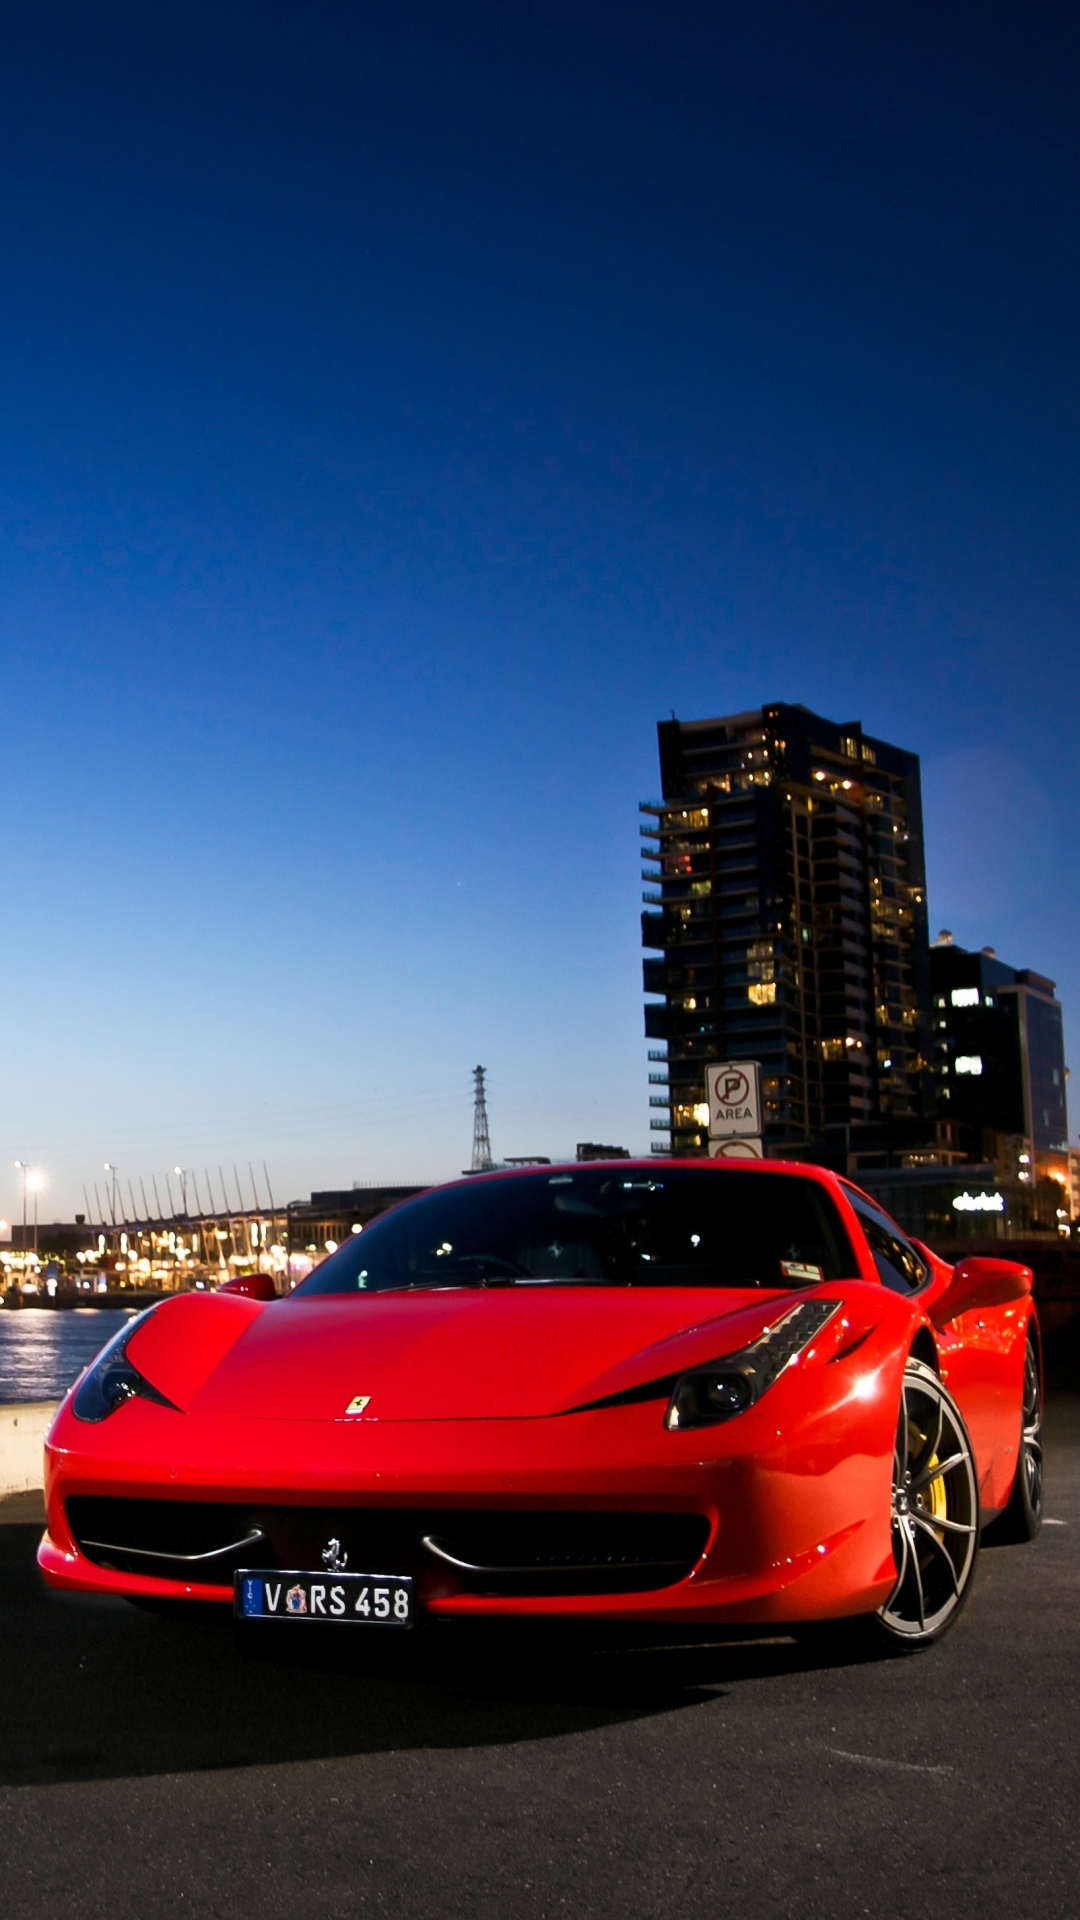 Ferrari F12 in an incredible color. Phone background [1080x2160] : carporn  | Ferrari f12, Ferrari f12berlinetta, Luxury cars